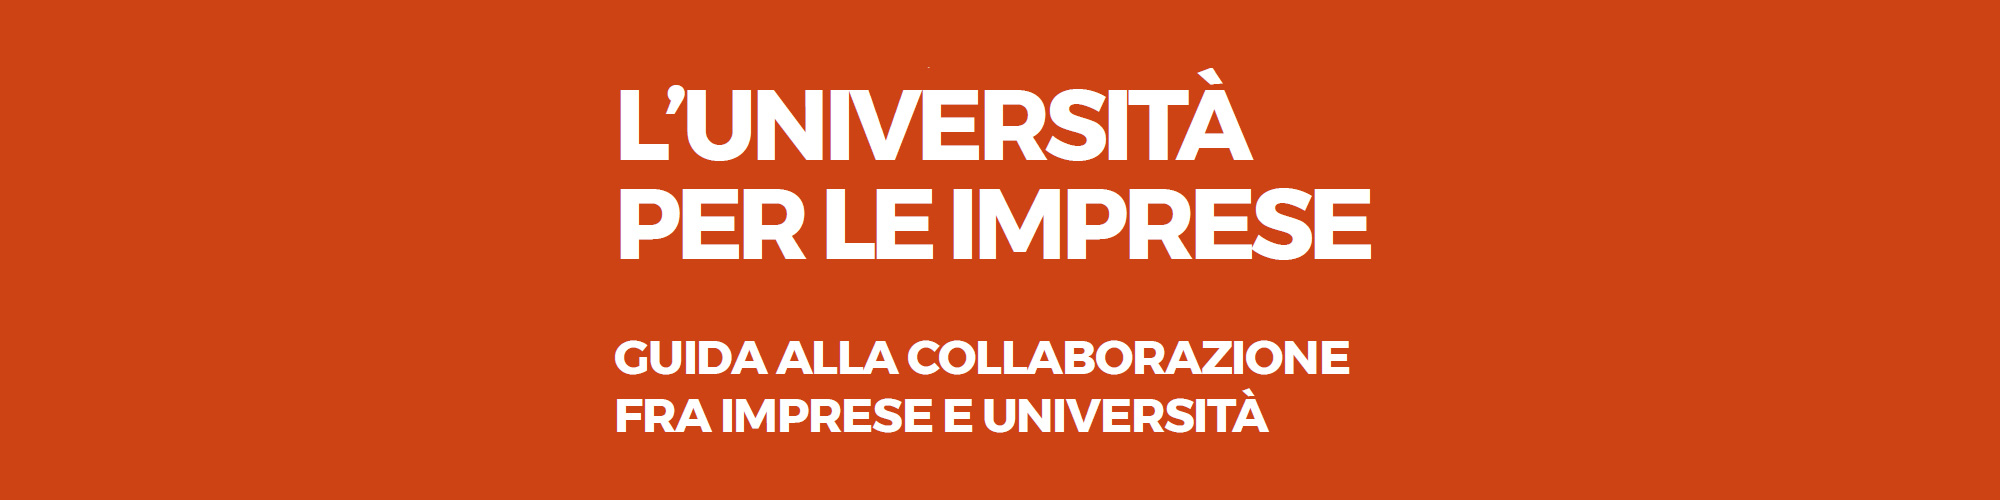 Pesaro Urbino – Guida alla collaborazione tra imprese e Università